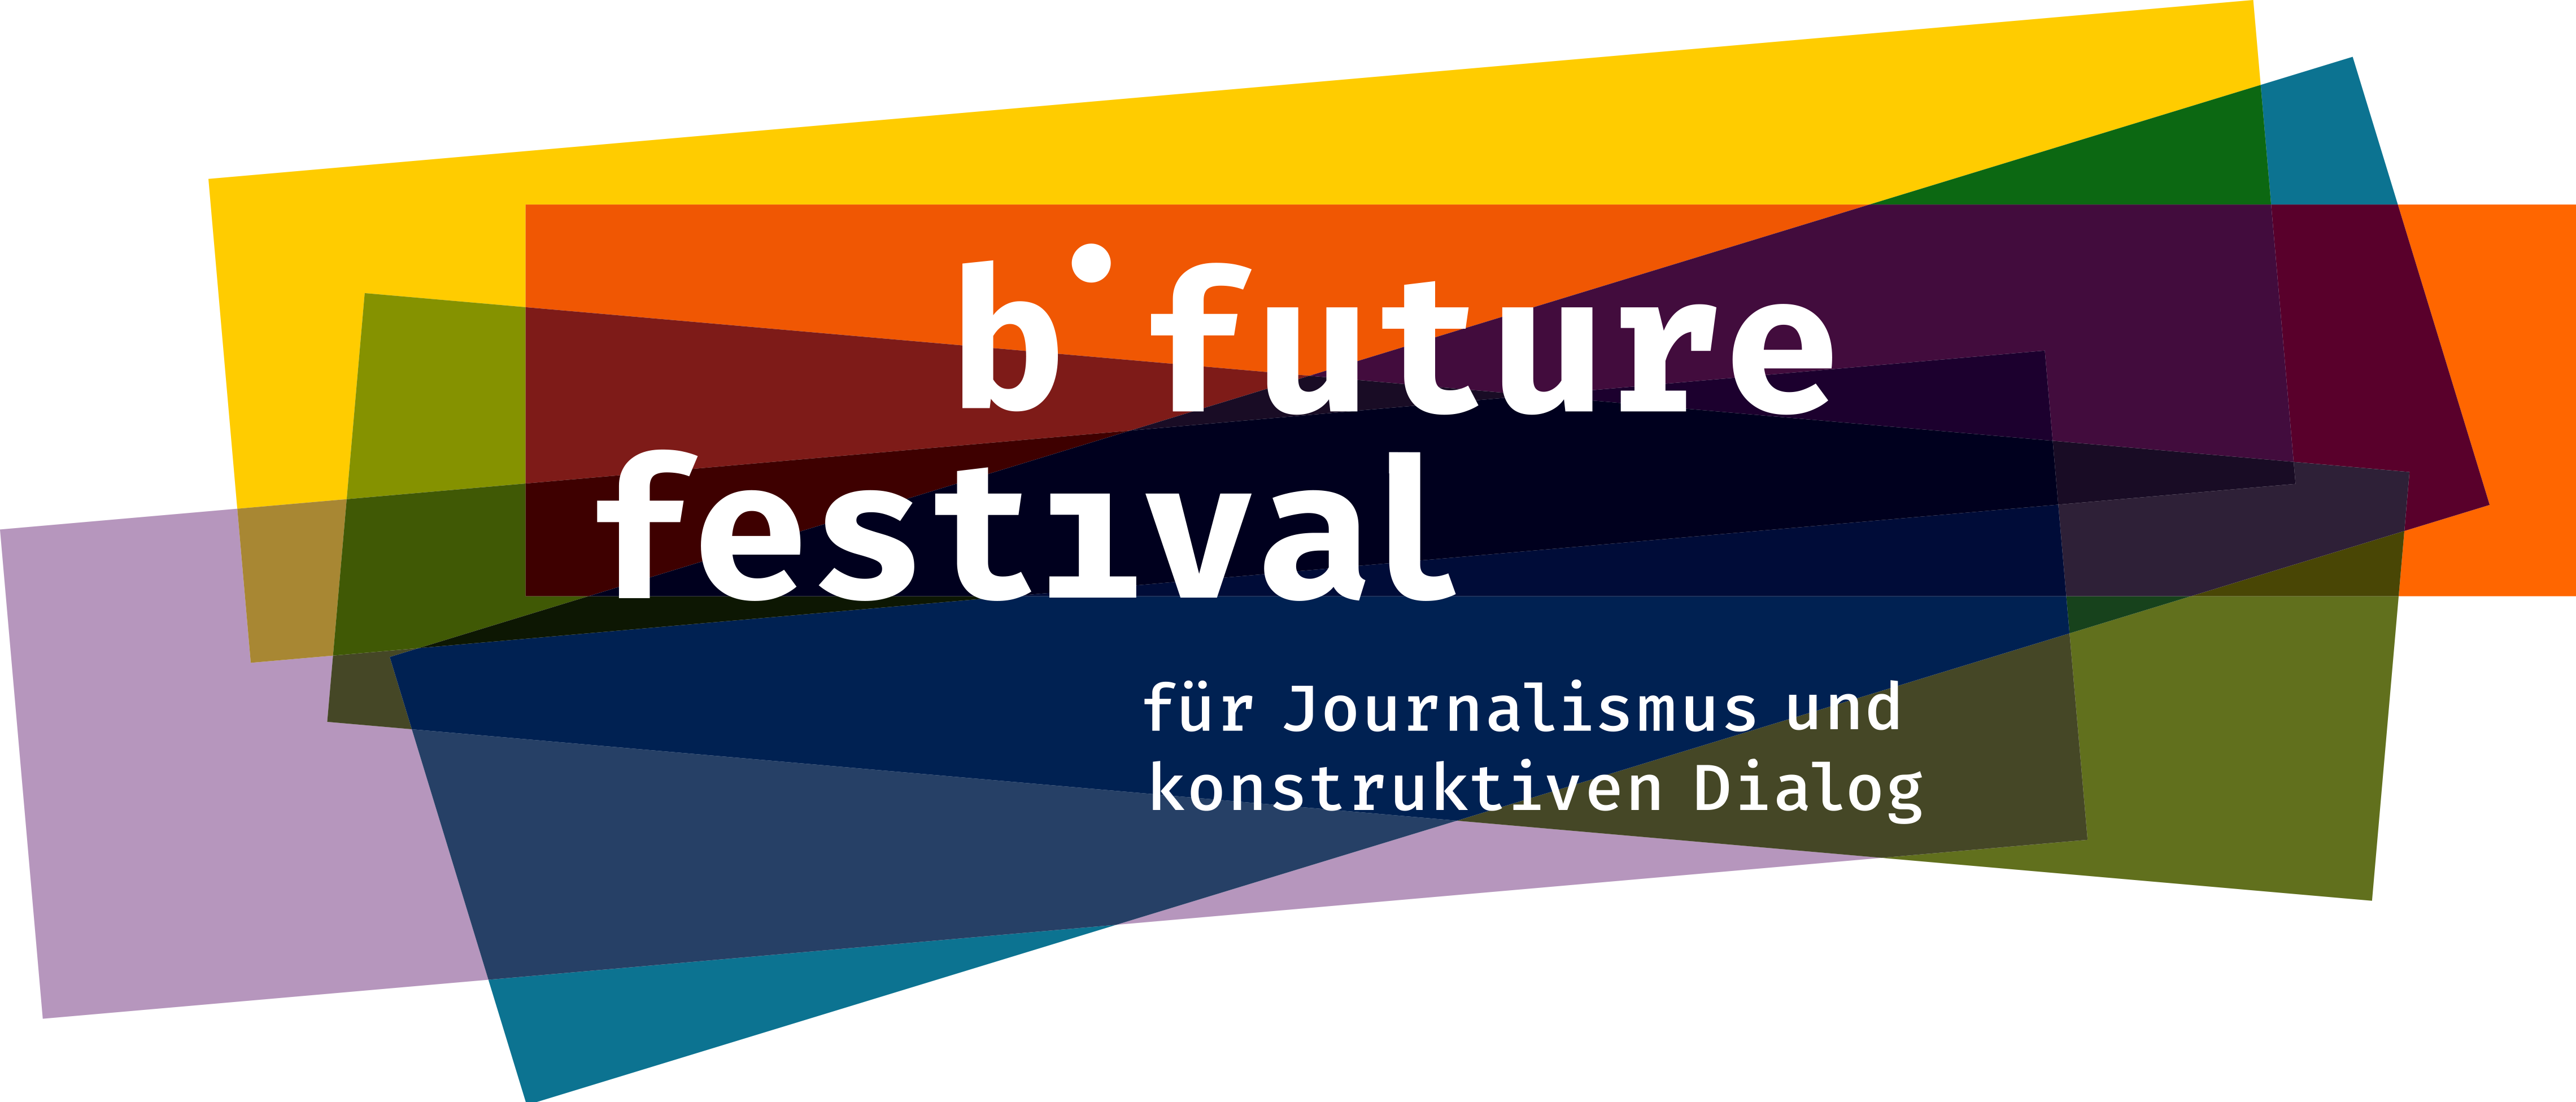 offizielles b future festival Logo mit weißer Schrift auf schiefangeordneten Rechtecken mit den Farben: gelb, orange, grün, blau und ein helles lila.